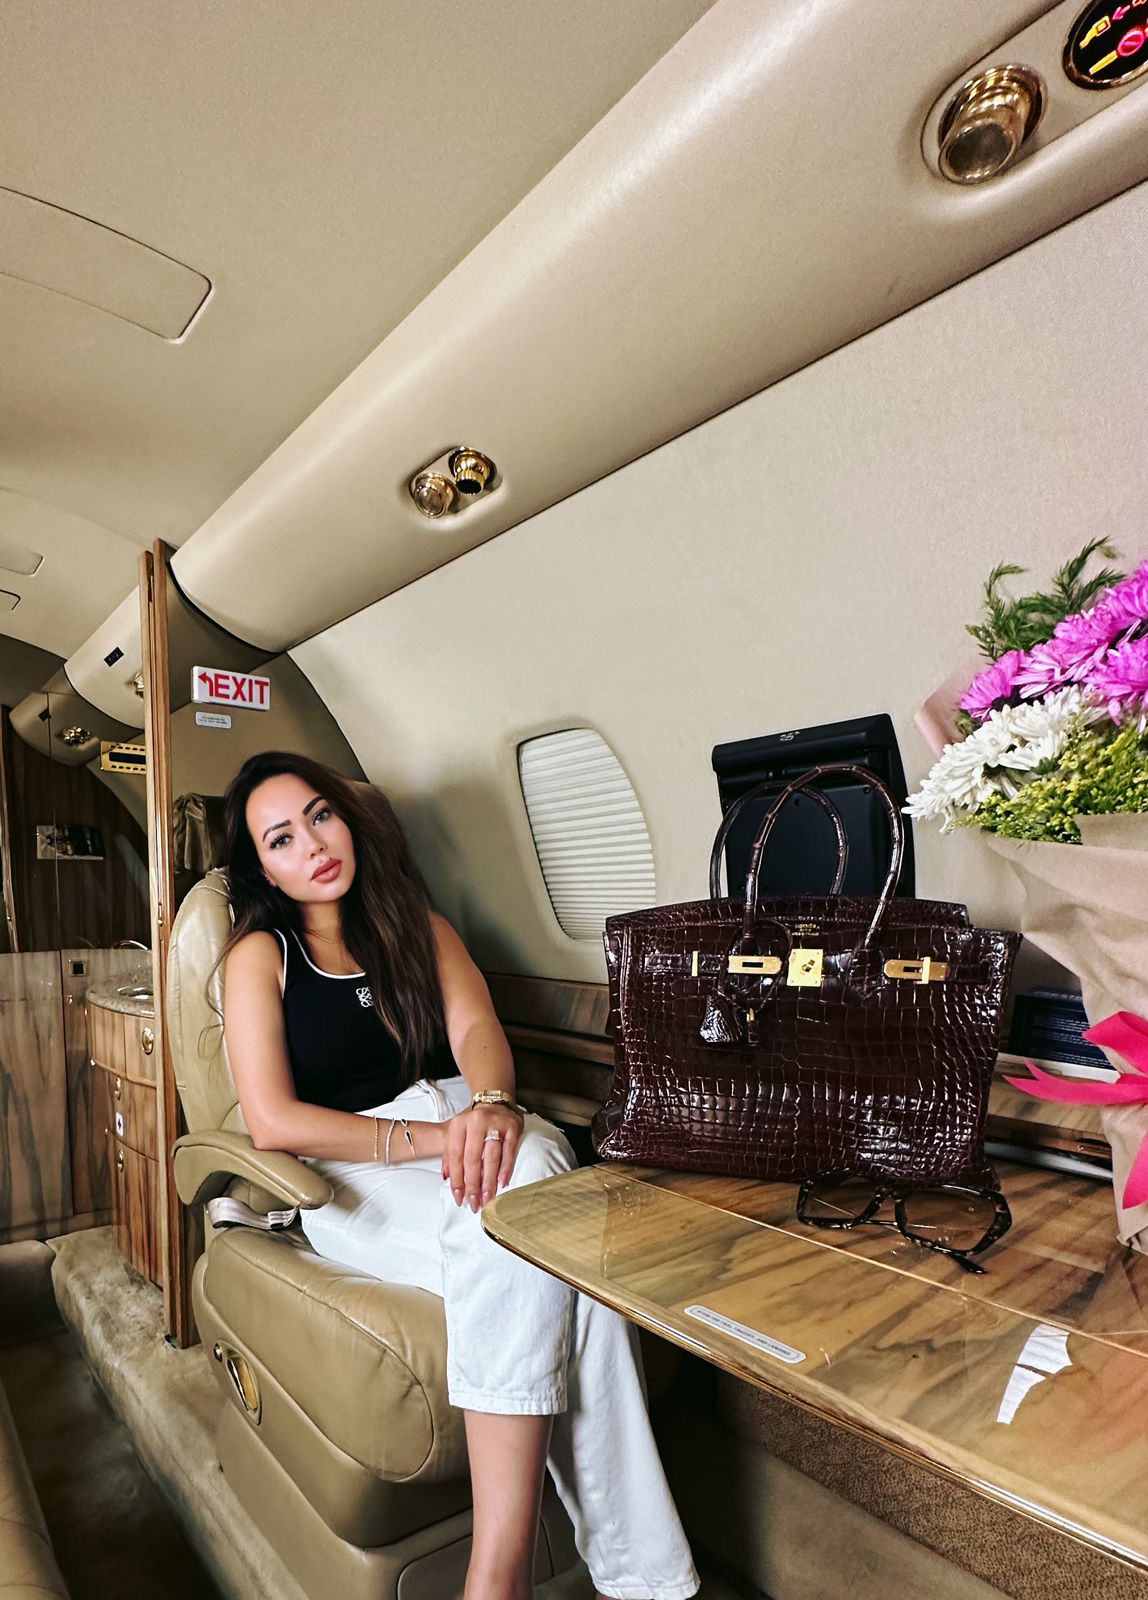  أسما إبراهيم تتألق في جلسة تصوير استثنائية على متن طائرتها الخاصة